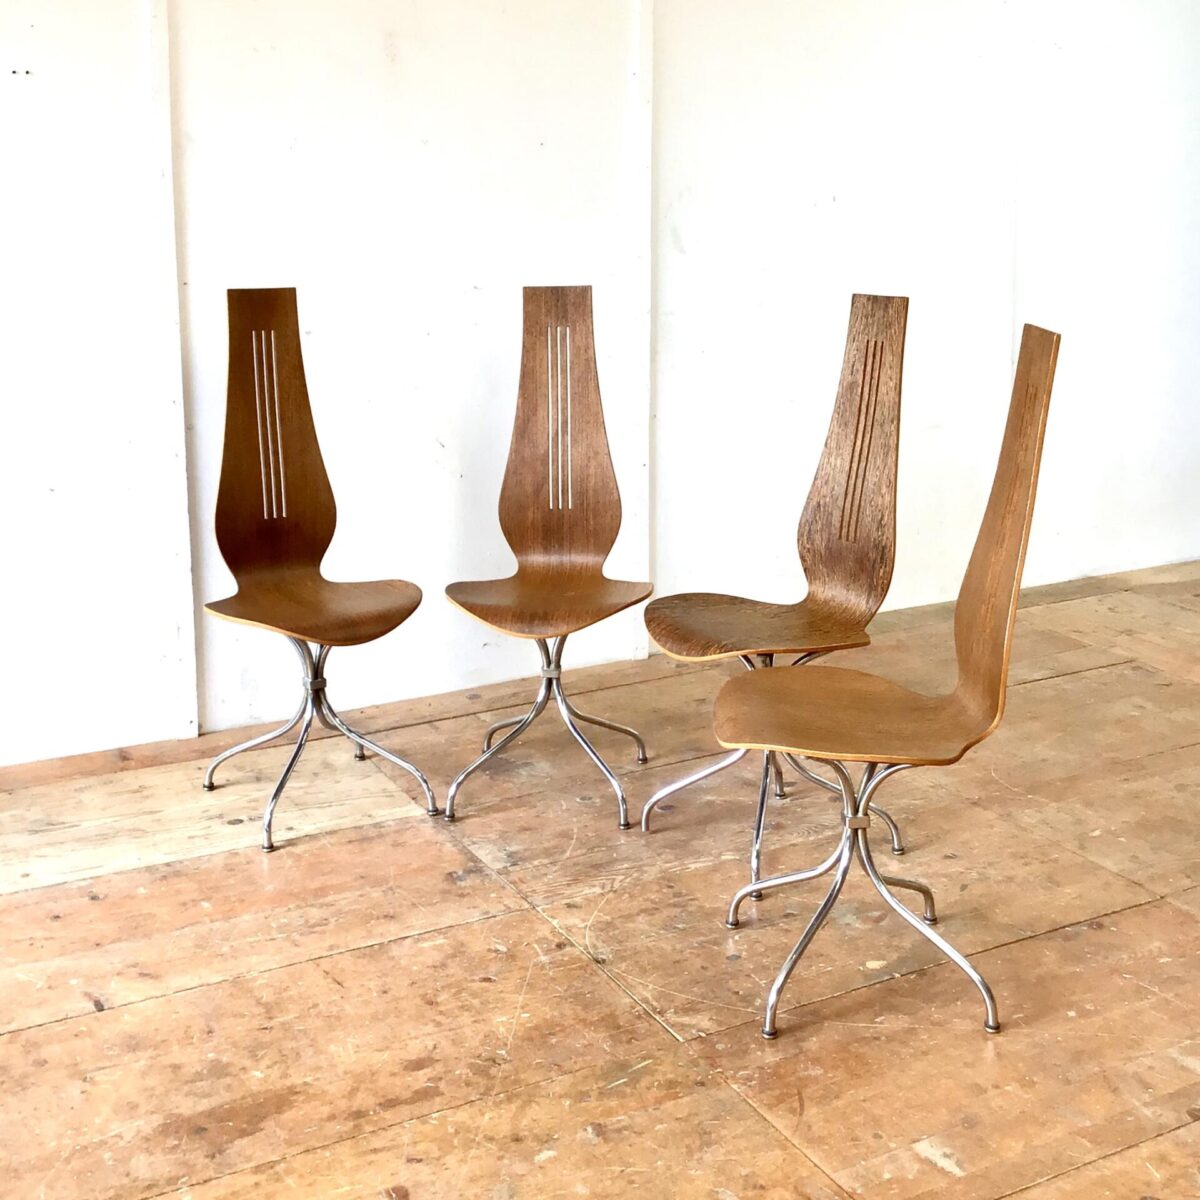 Midcentury Esszimmer Stühle von Theo Häberlin aus den 70er Jahren. Sitzhöhe 45cm gesamt Höhe ca. 106cm. Die Formsperrholz Sitzschale, mit hohem Rücken, ist angenehm zwischen den Schulterblättern. Diese Stühle heben sich vorallem durch die Höhe von anderen Stühlen ab. Die Lehne überragt deutlich die Höhe einer Tischkante. Das Metall Untergestell ist verchromt, stabil und hochwertig ausgeführt. Der kleine Metall Würfel, durch den die Stuhlbeine verlaufen, erinnert mich an Art déco Möbel Elemente. Einer der Stühle unterscheidet sich deutlich durch die lebhafte Holzmaserung. 